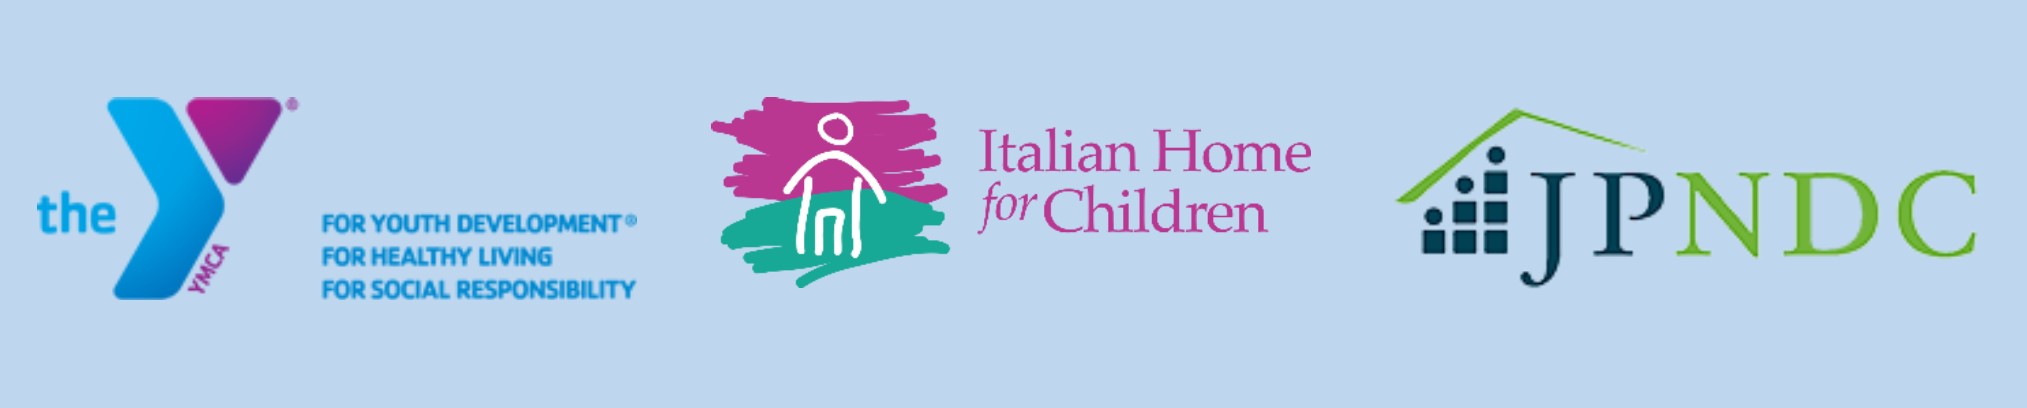 YMCA, Italian Home for Children and JPNDC Logos